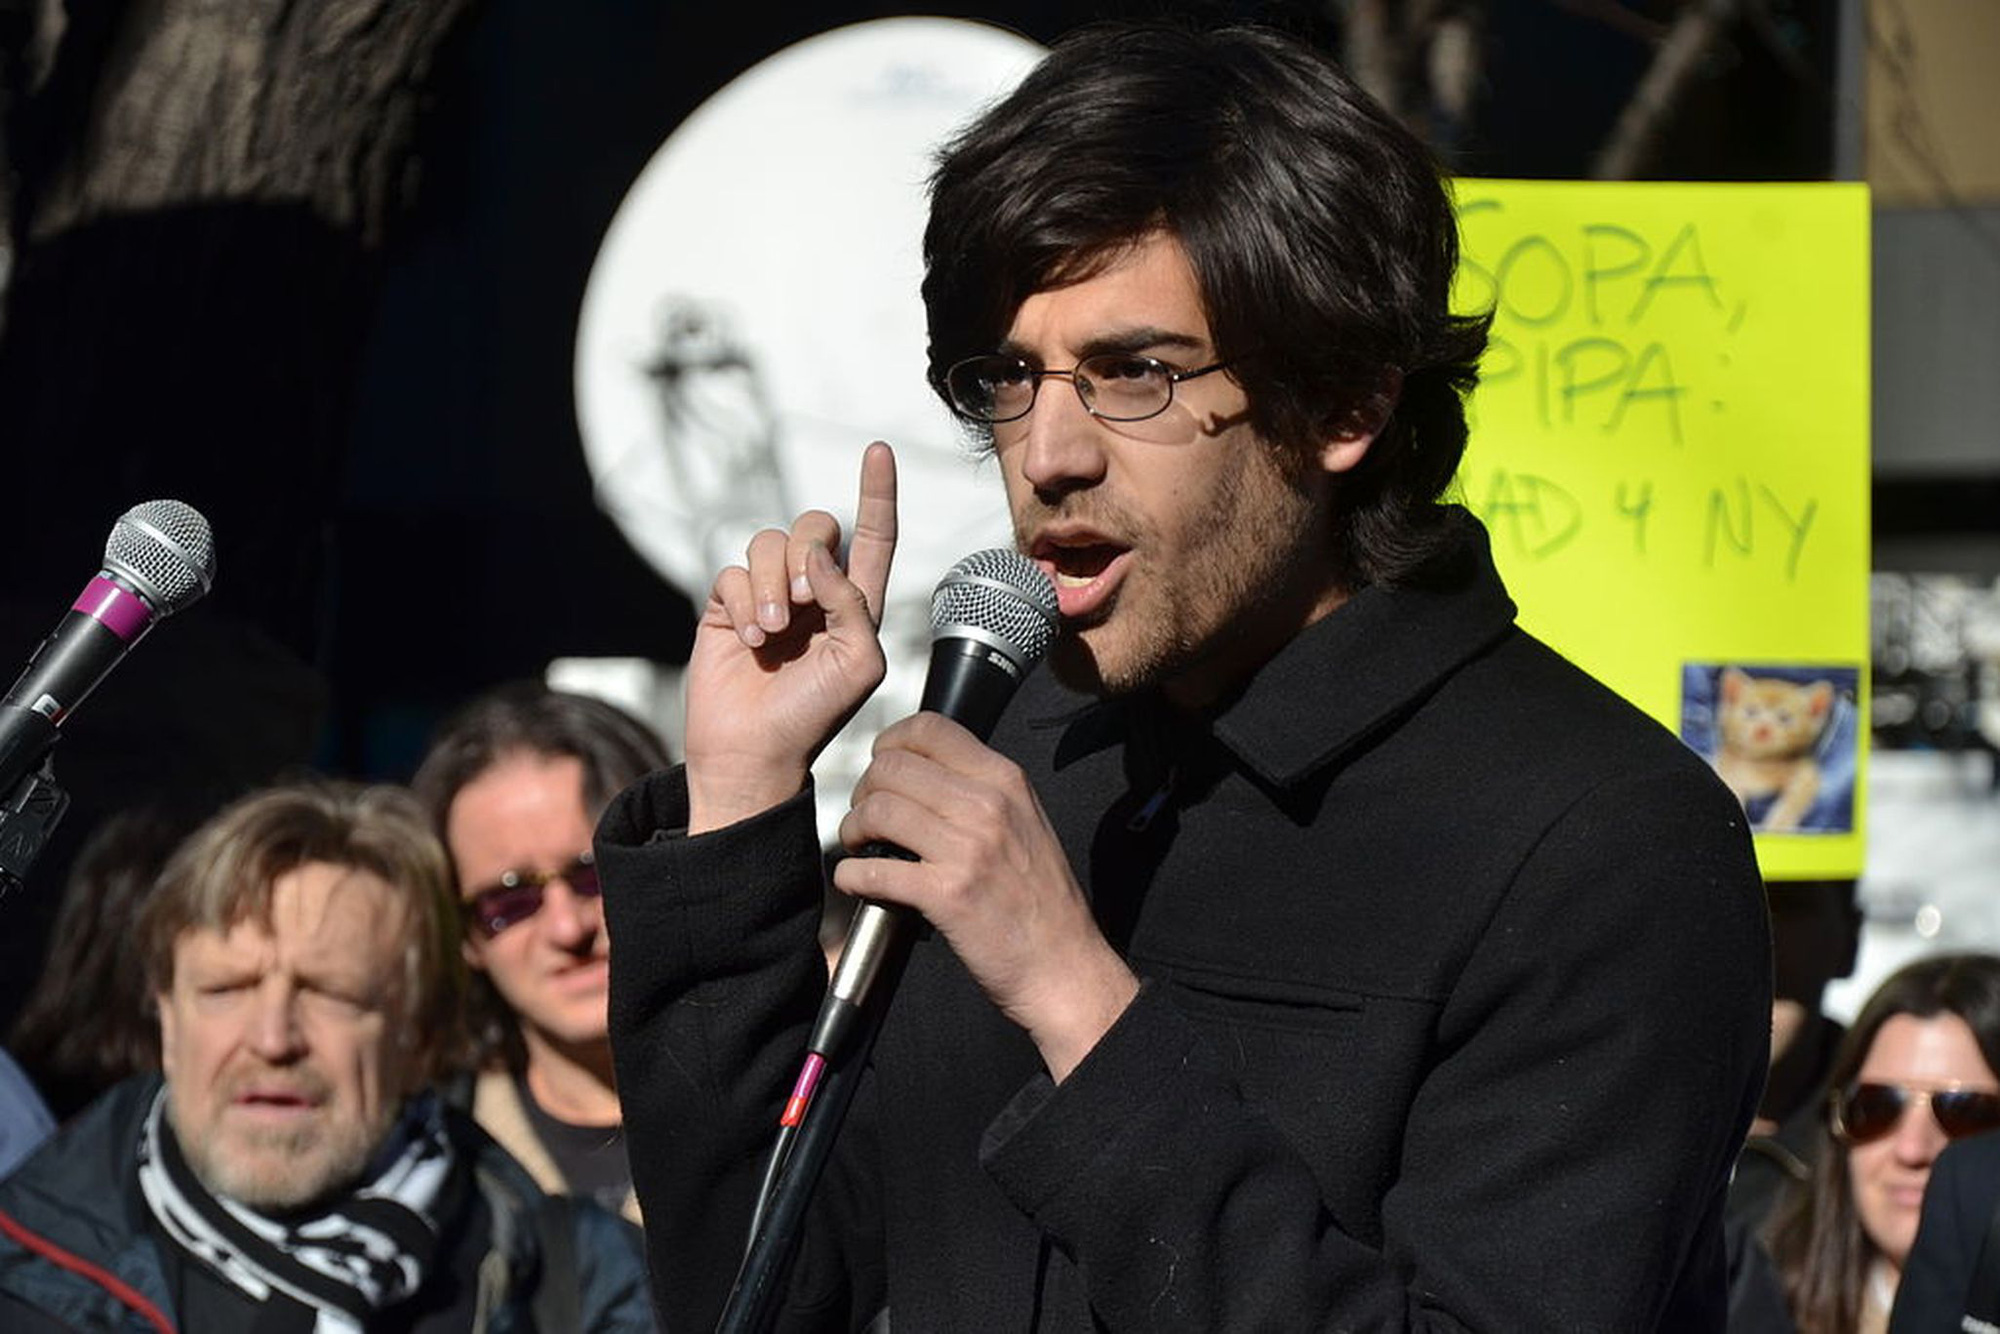 Cái chết của Aaron Swartz không làm những hoạt động của anh bị gián đoạn, thậm chí đã truyền cảm hứng cho rất nhiều hacker khác đấu tranh hơn nữa để tạo lập sự công bằng trên Internet. Ảnh: @AFP.